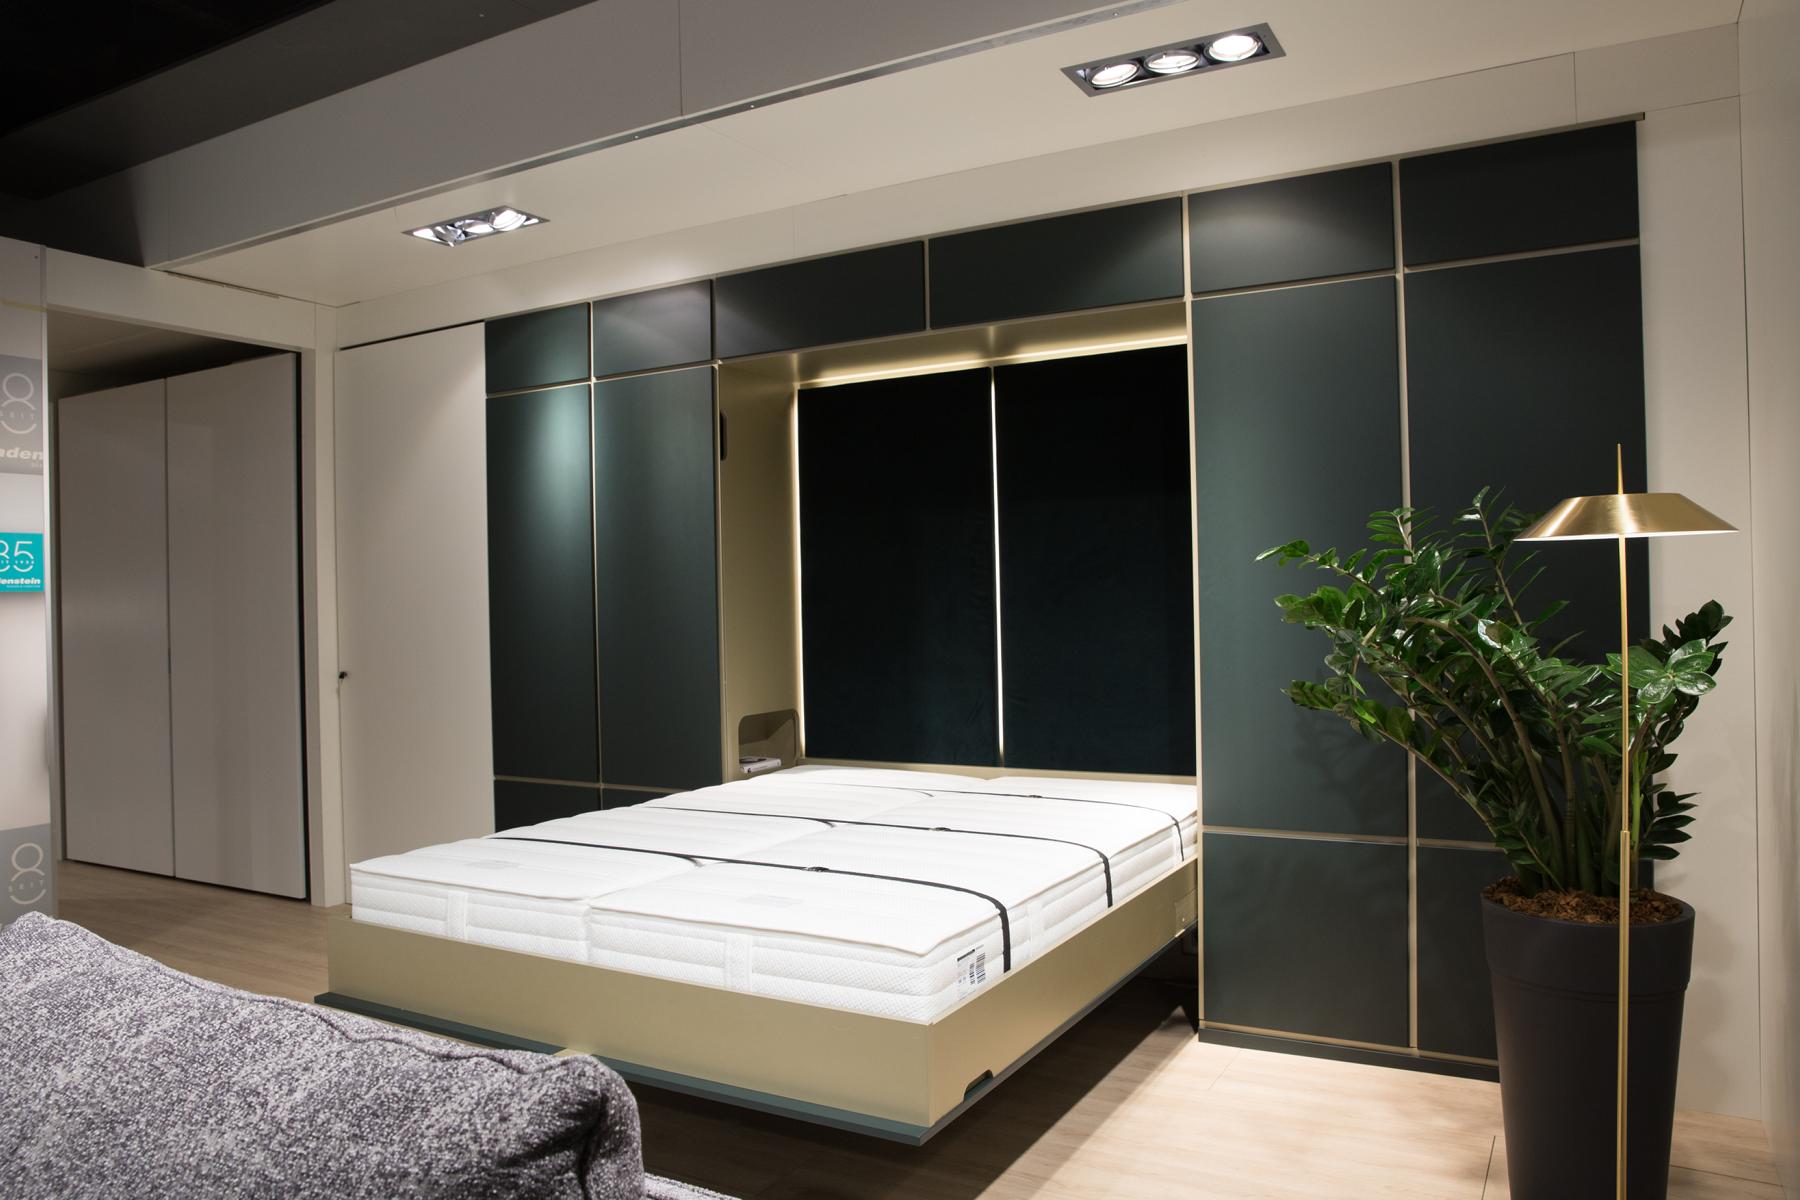 Moderne Schlafzimmereinrichtung mit einem großen Bett und Schiebetüren zum Kleiderschrank sowie einer gemütlichen Atmosphäre, die durch warmes Licht und eine Topfpflanze betont wird.